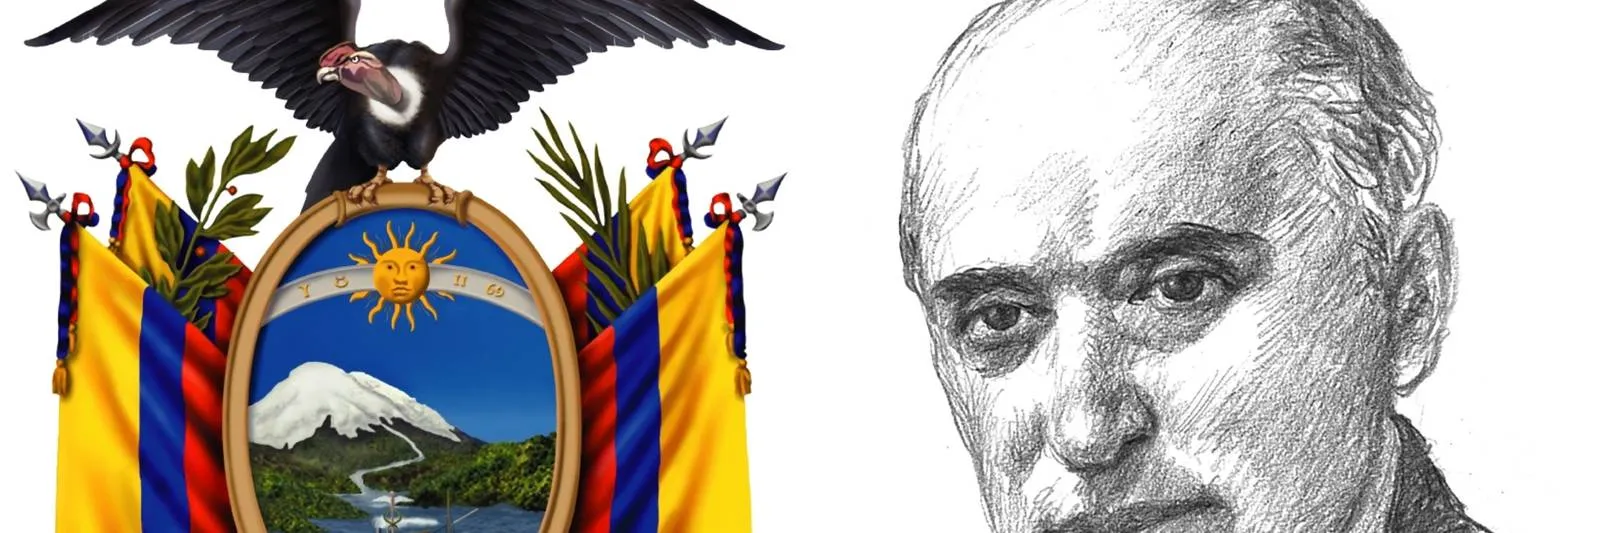 Quién fue el creador del Escudo Nacional del Ecuador | Cultura |  Entretenimiento | El Universo